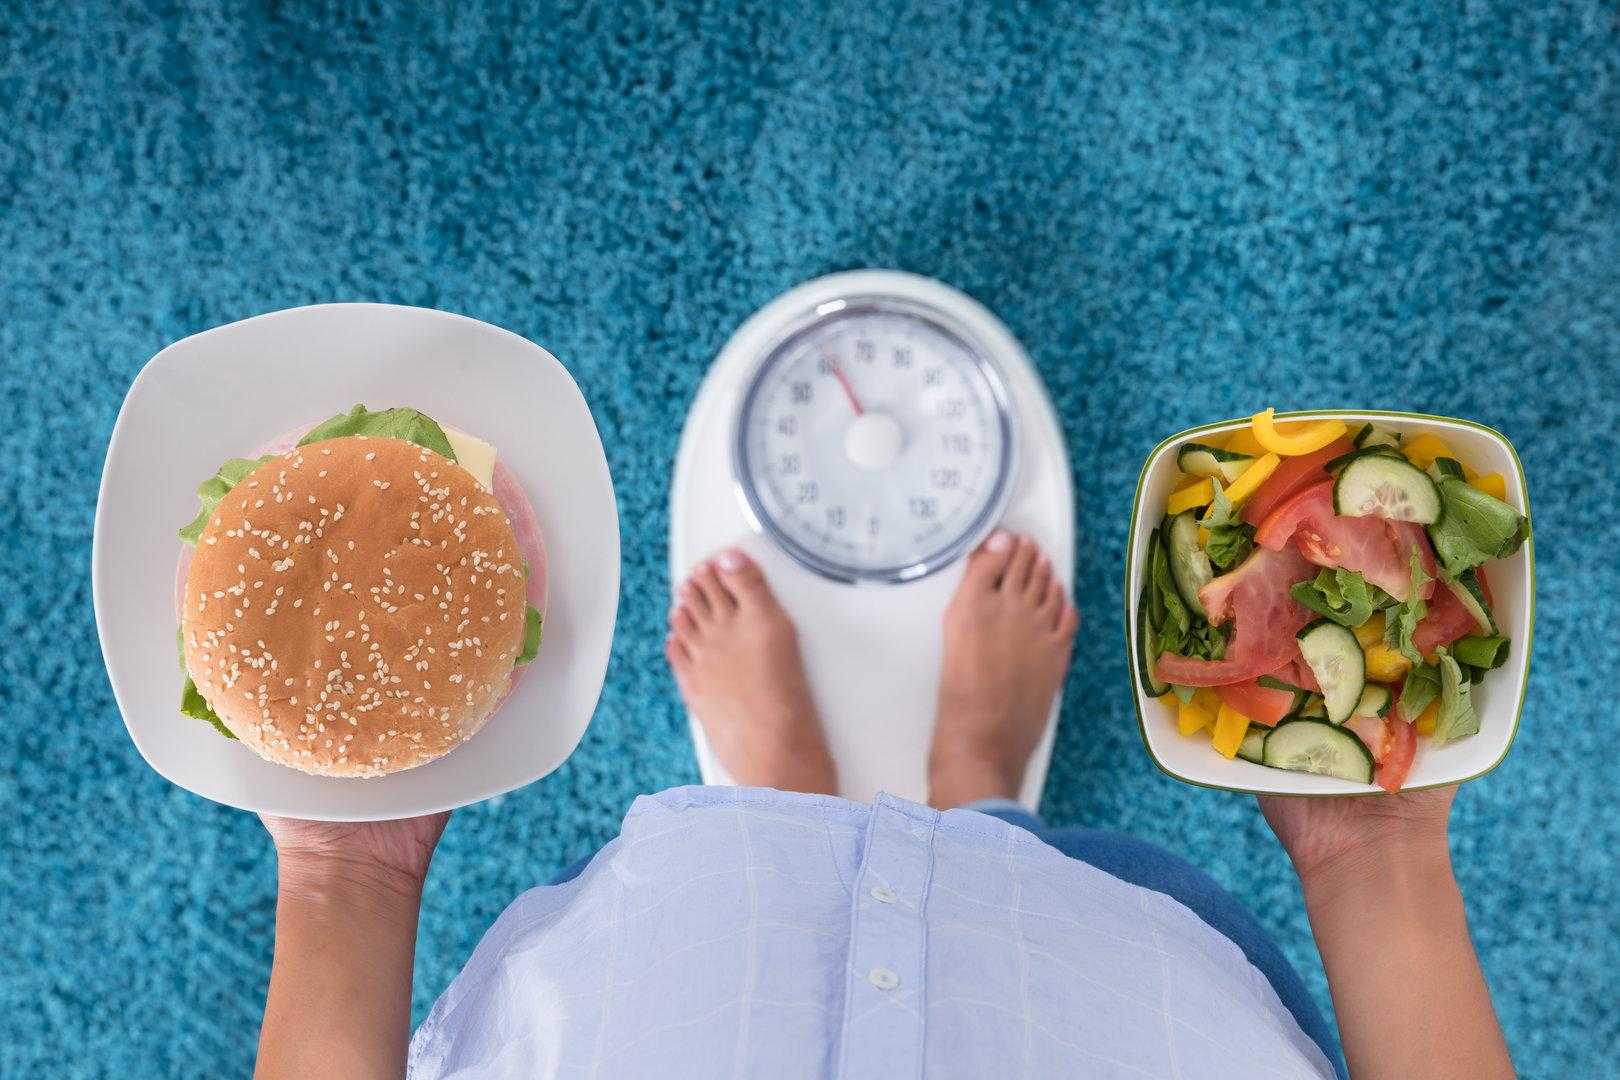 Как похудеть после праздников - разгрузочные дни, диеты и упражнения, чтобы быстро скинуть вес